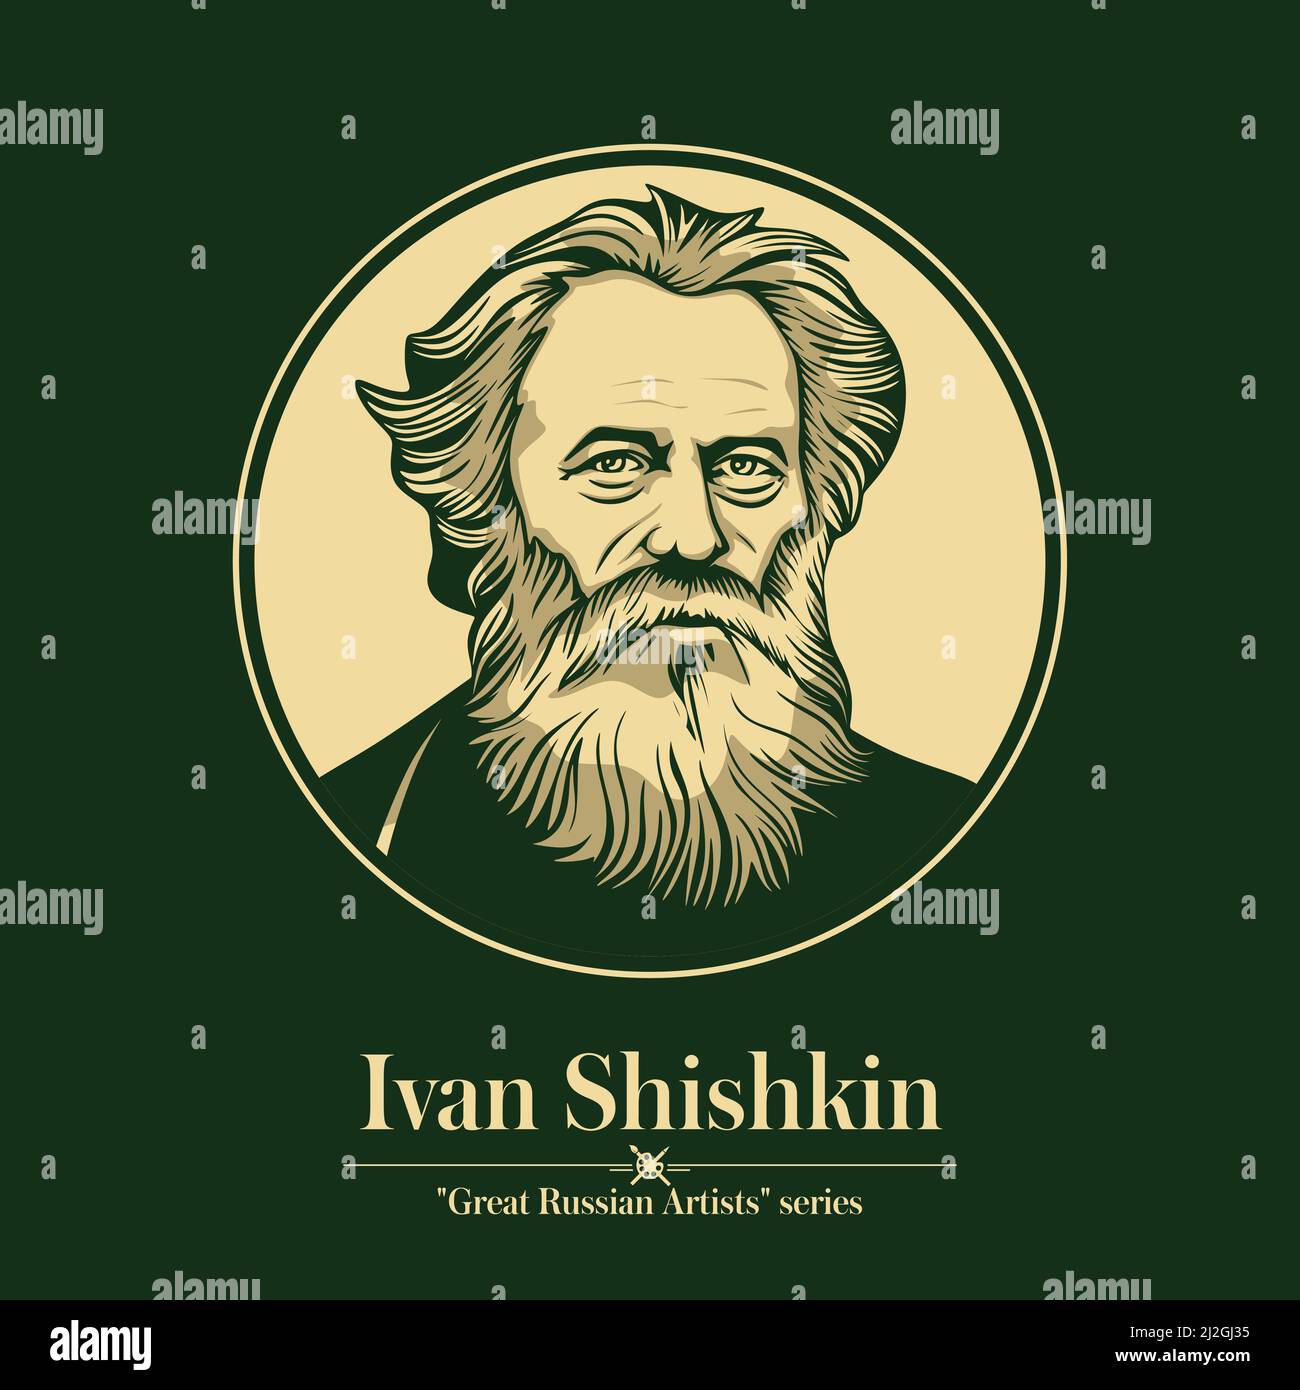 Großer russischer Künstler. Ivan Shishkin war ein russischer Landschaftsmaler, der eng mit der Peredvizhniki-Bewegung verbunden war. Stock Vektor